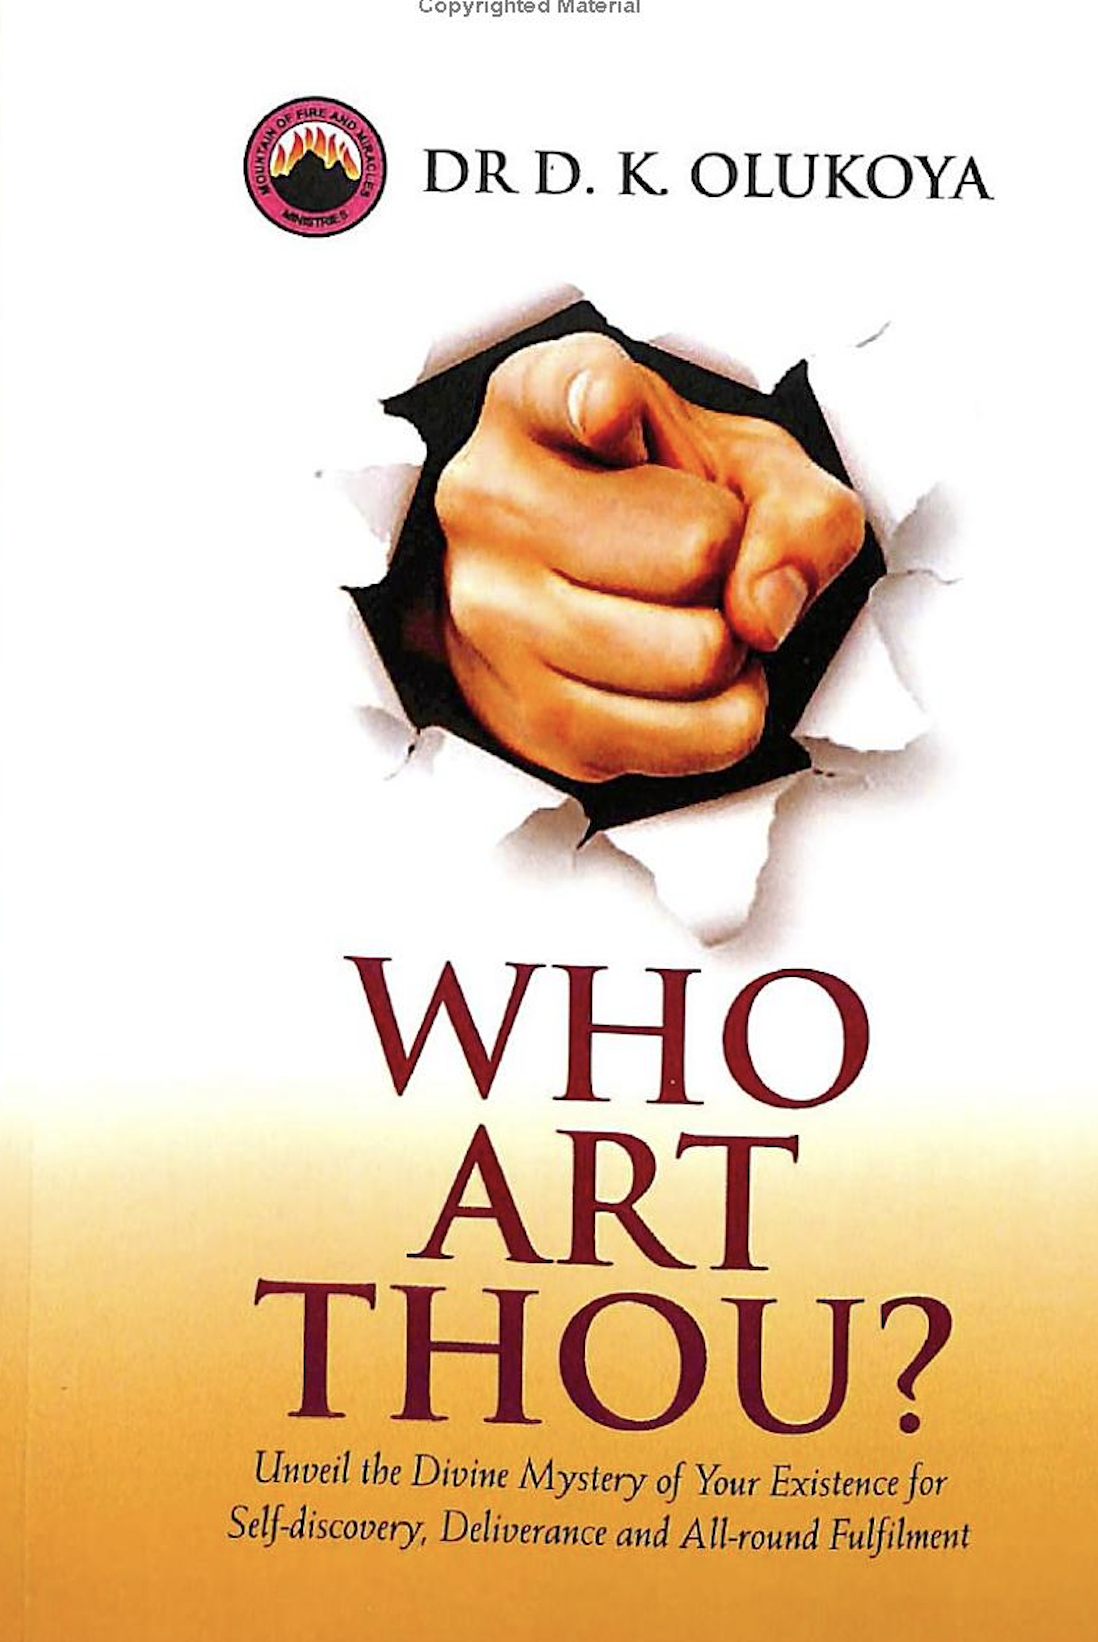 Who art thou? Dr D. K. Olukoya